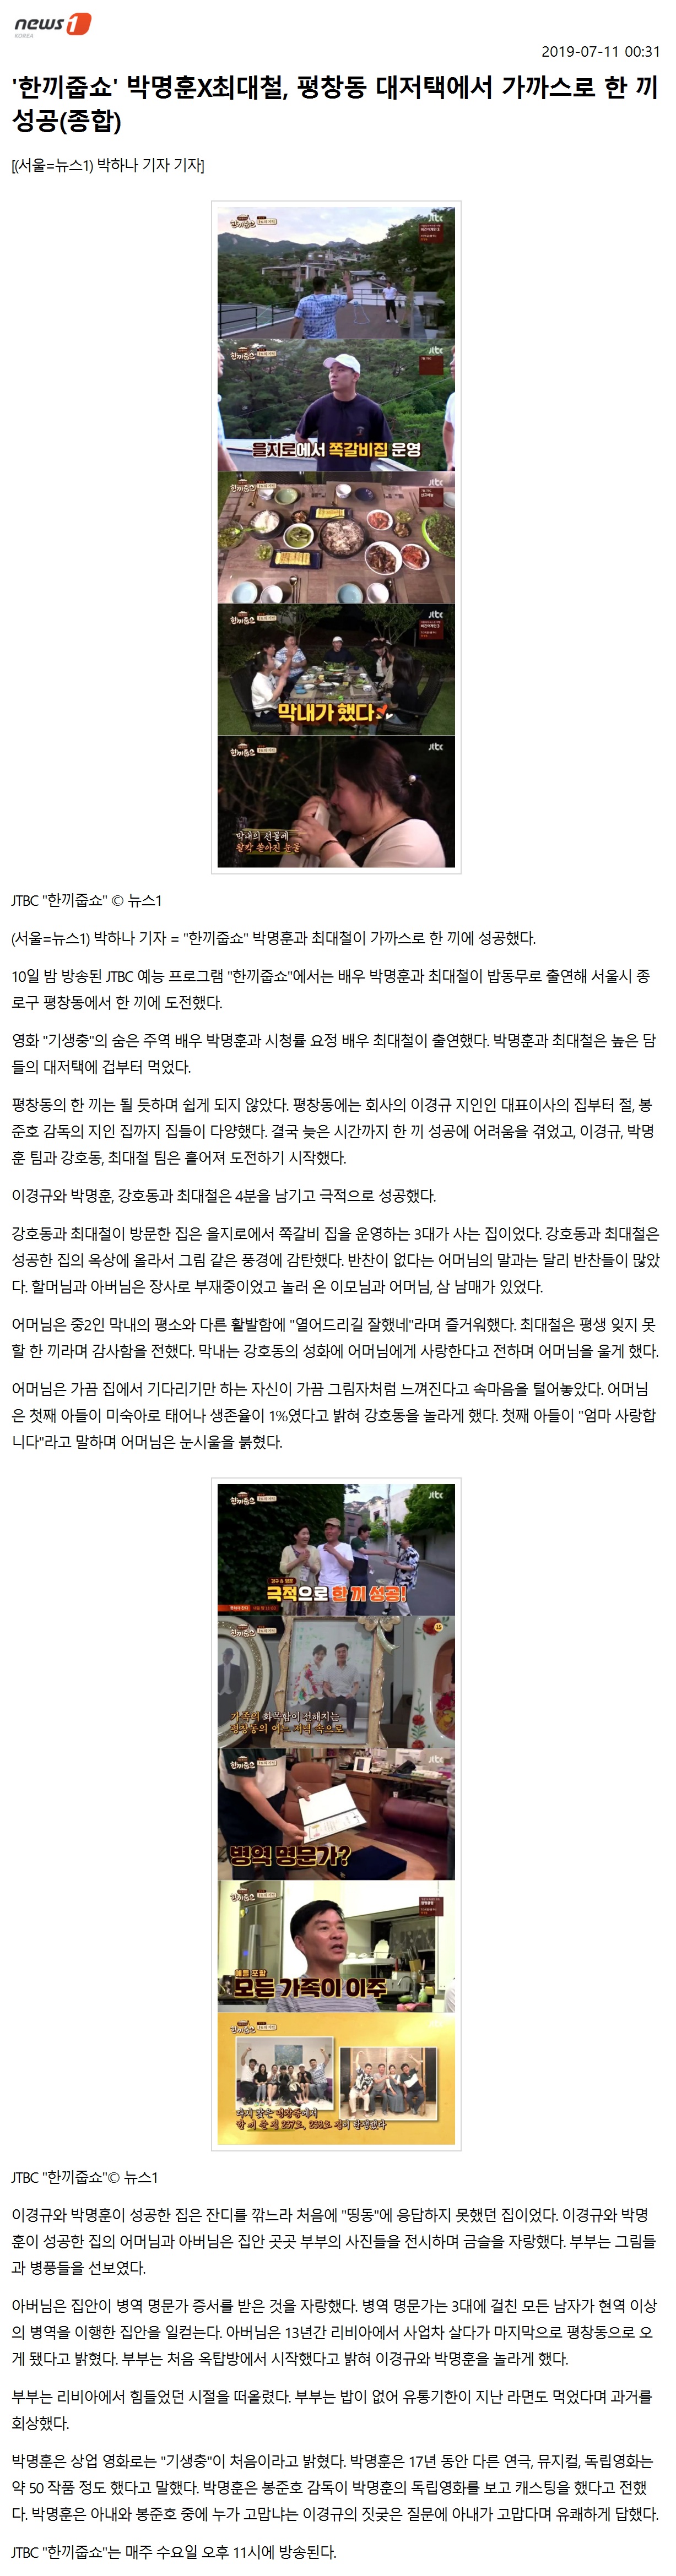 뉴스1_'한끼줍쇼' 박명훈X최대철, 평창동 대저택에서 가까스로 한 끼 성공1